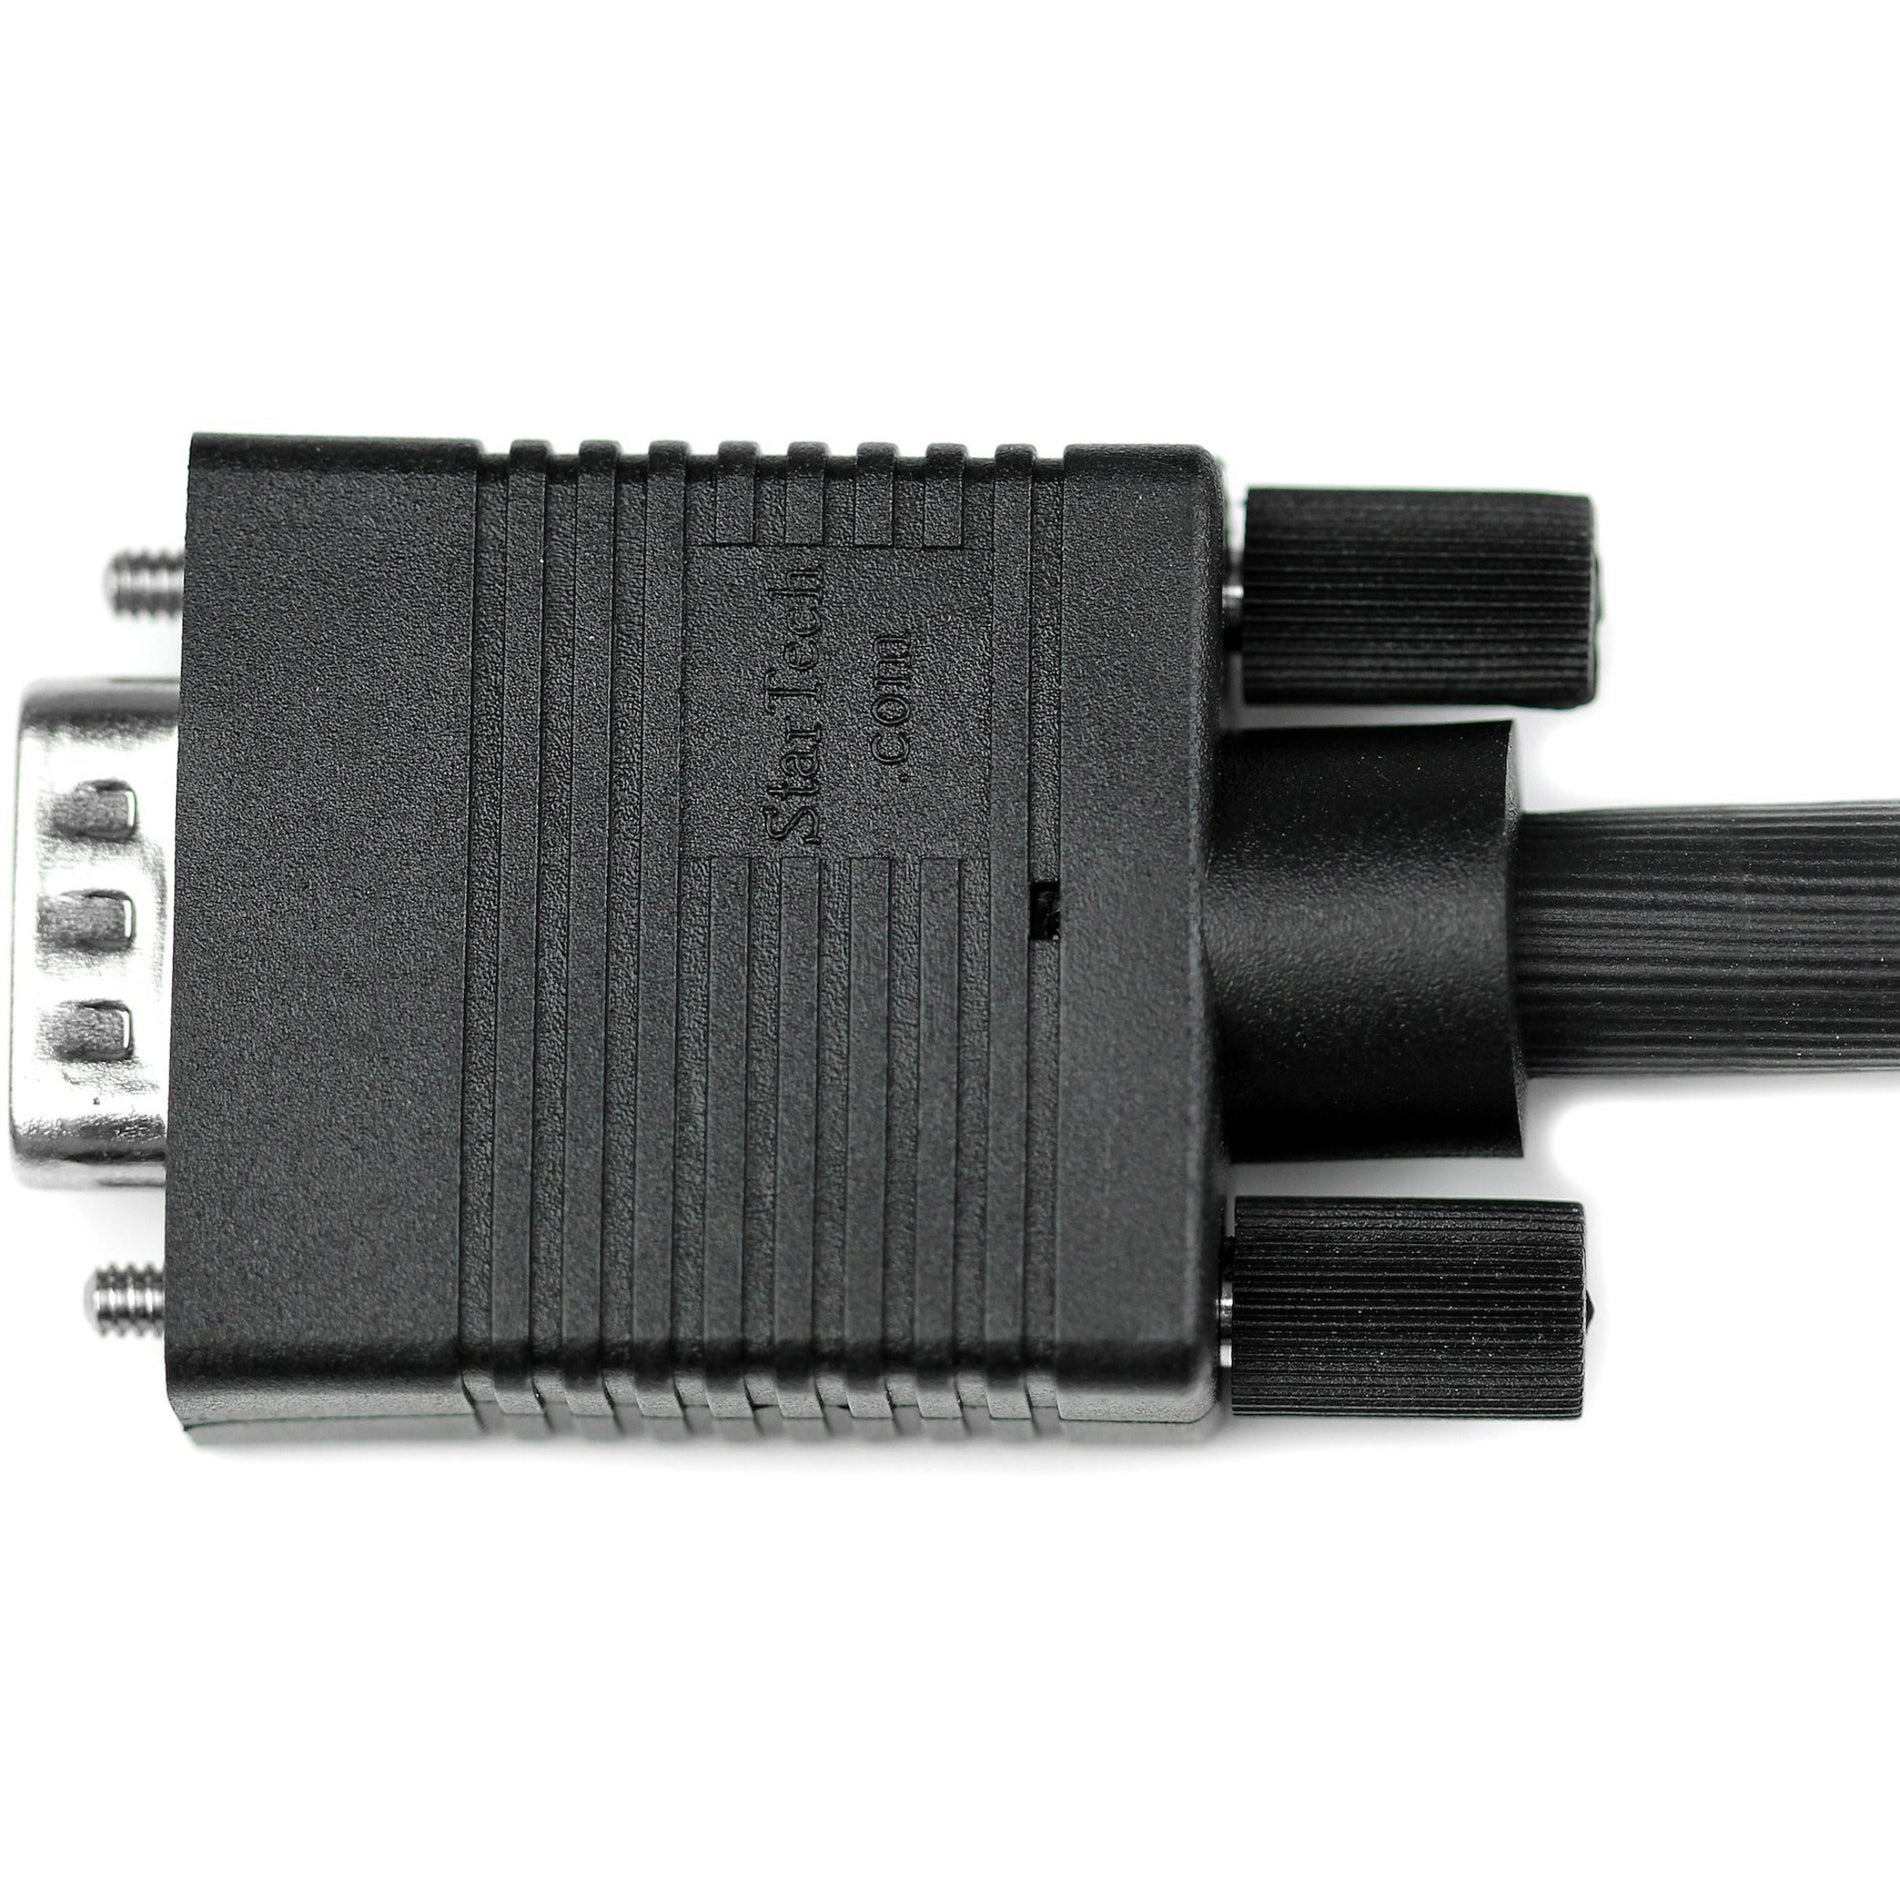 StarTech.com MXT101MMHQ 高分辨率同轴SVGA/VGA显示器电缆，晶莹清晰显示，6英尺